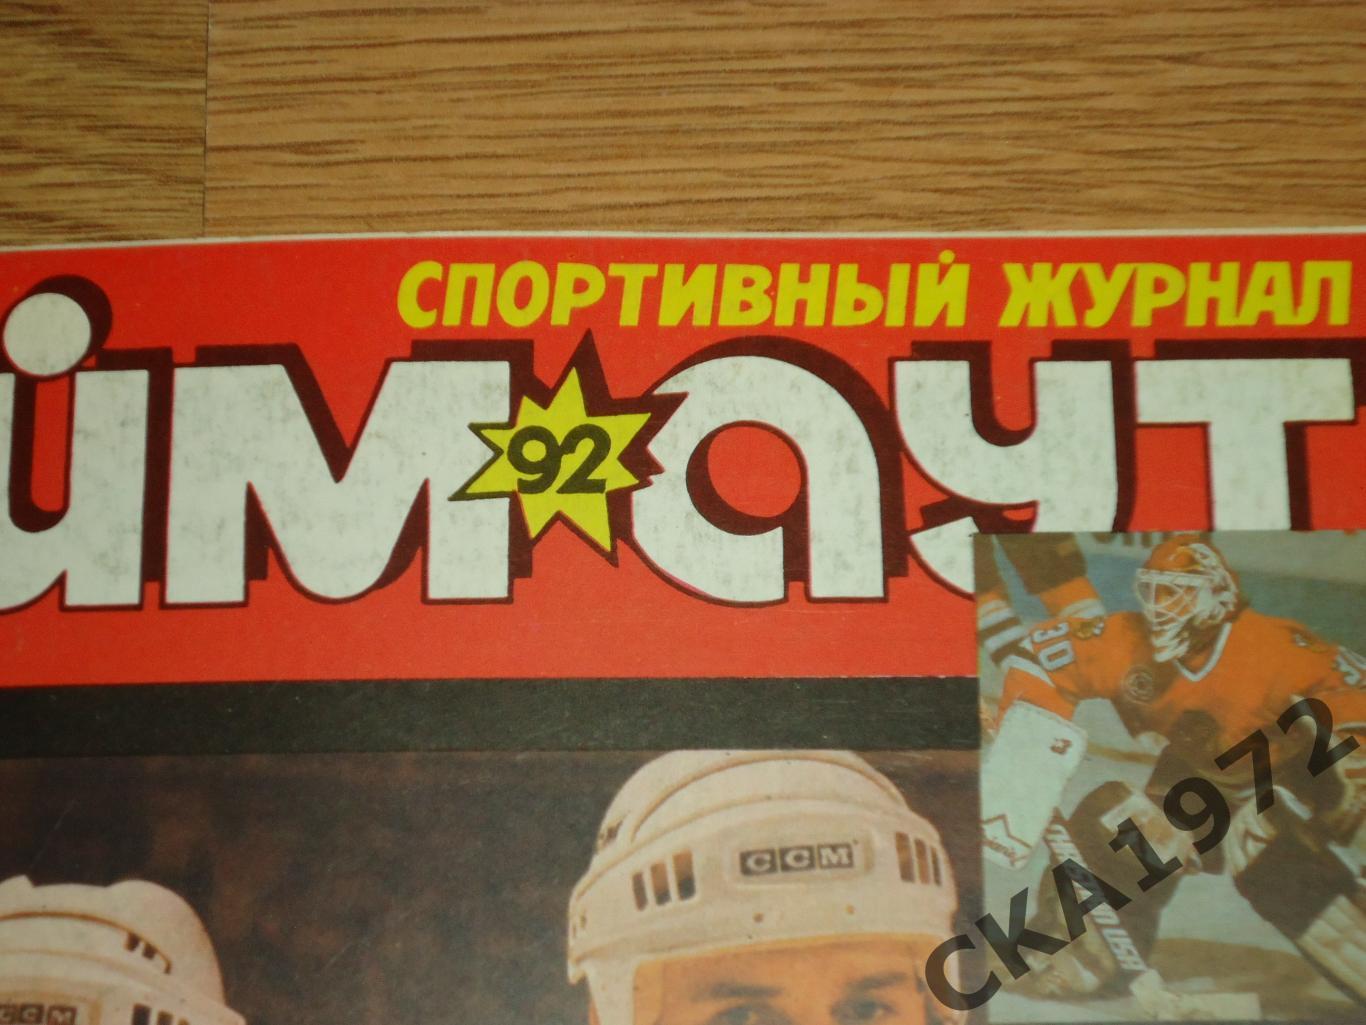 журнал Тайм аут №2 1992 Санкт-Петербург +++ 1